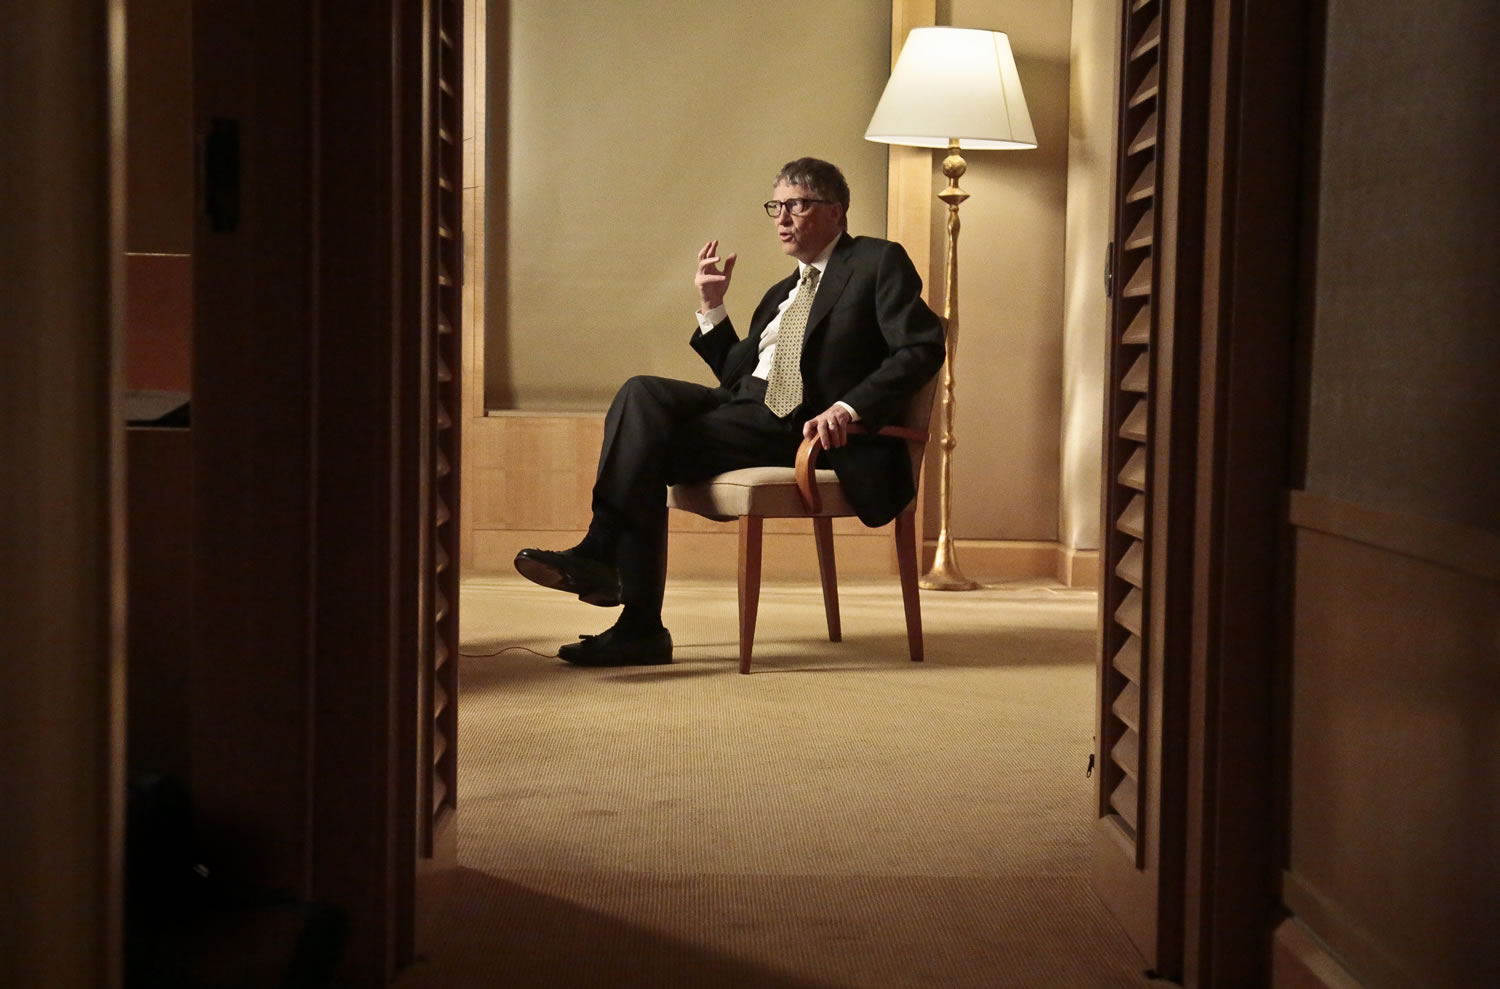 Philanthropist Bill Gates speaks during an interview on Jan. 21 in New York.